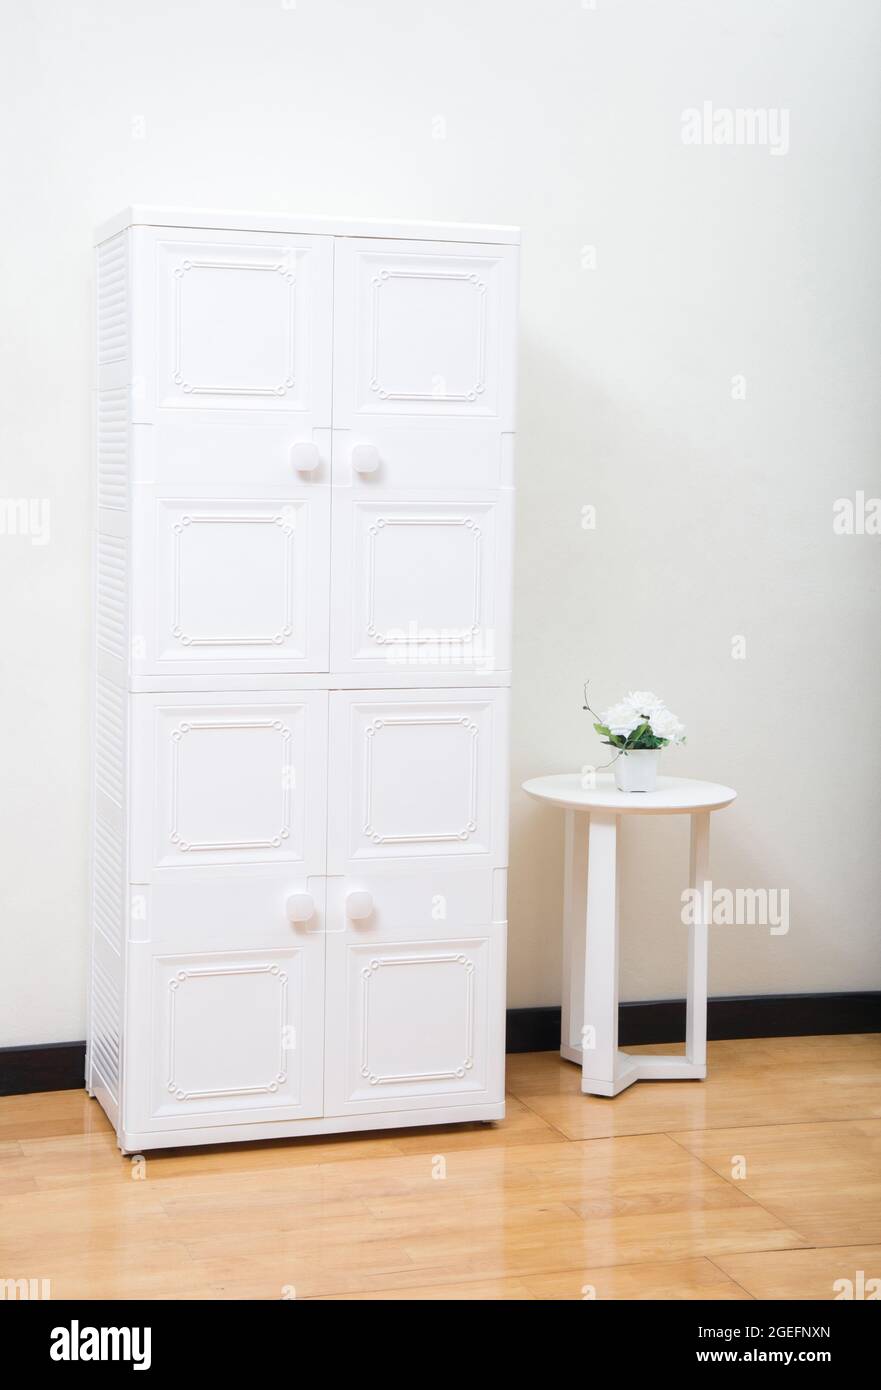 Weißer Plastikschrank im minimalistischen Stil im Schlafzimmer  Stockfotografie - Alamy